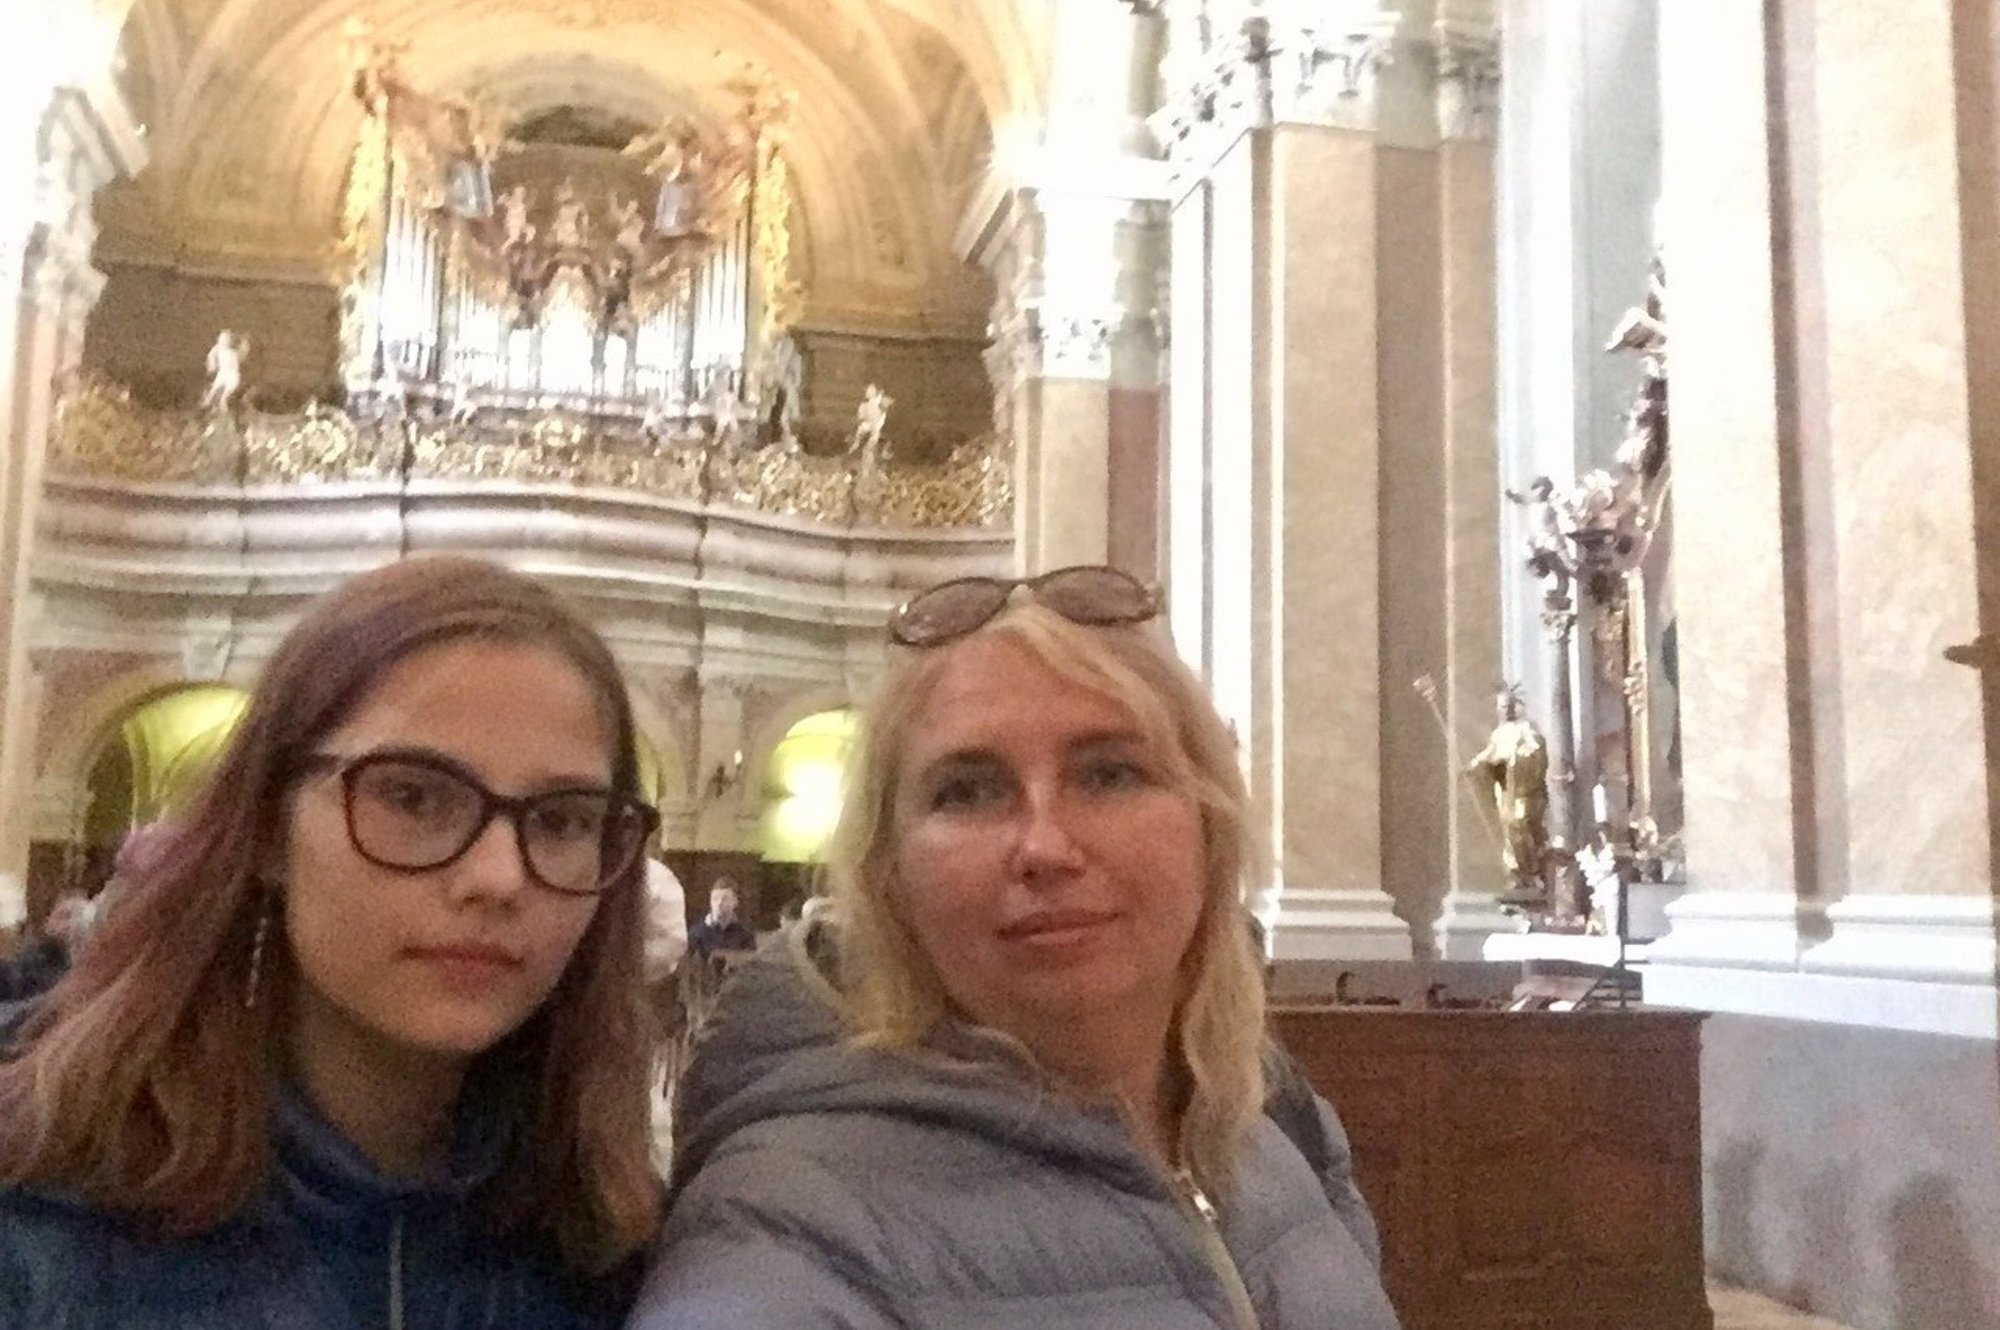 Экскурсия мне и дочери очень понравилась. Гид много и интересно рассказывал о Венгрии и о Балатоне.